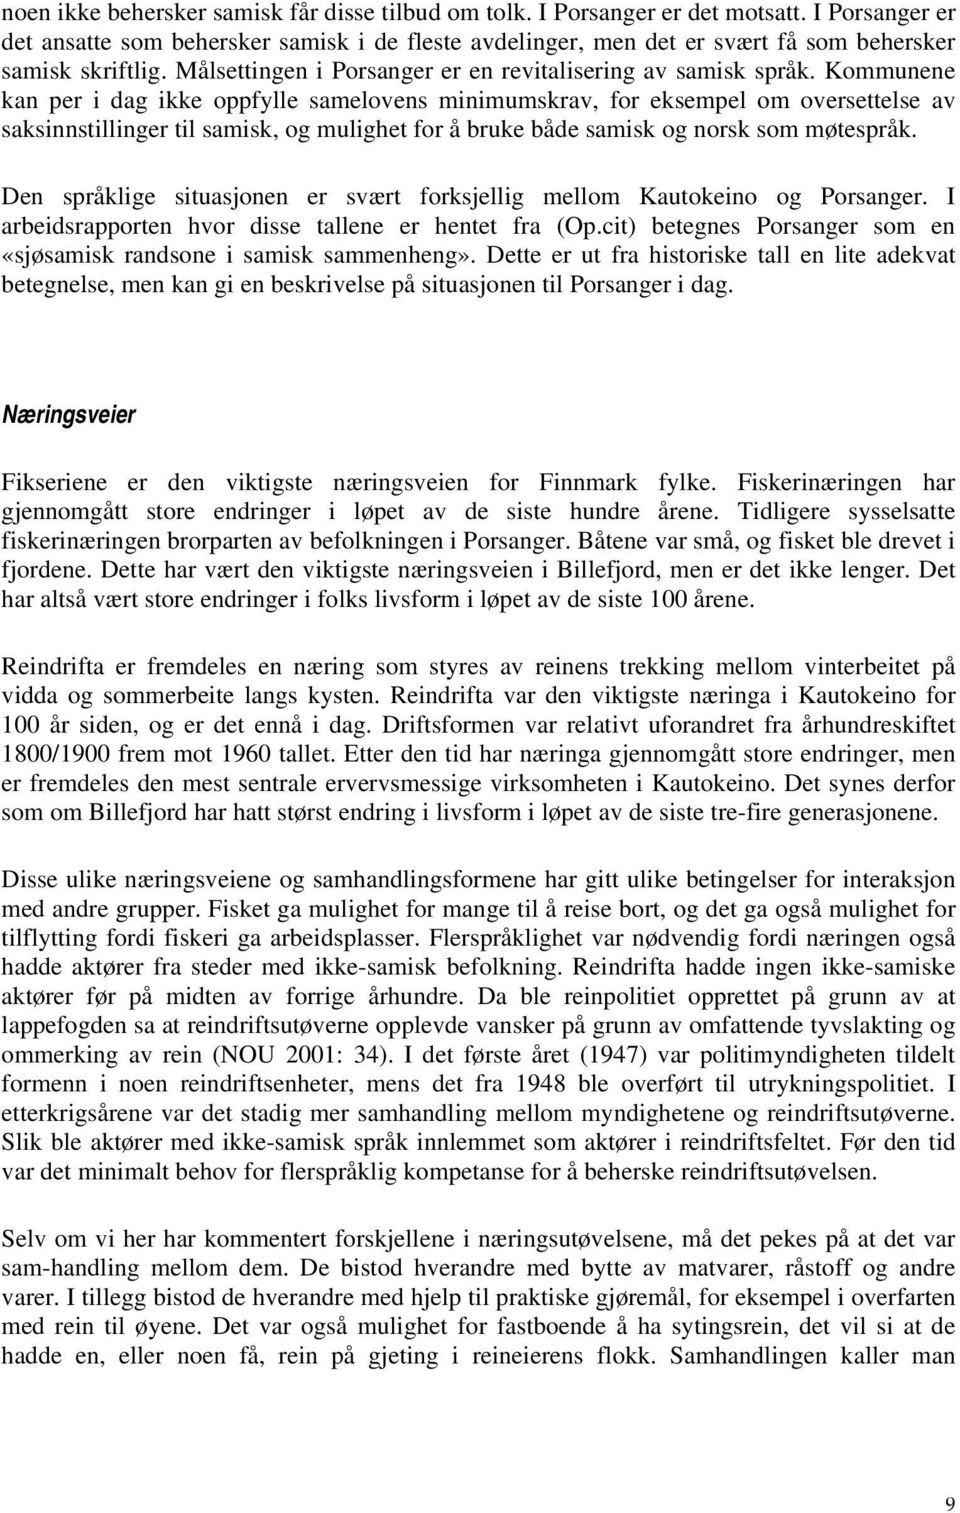 Kommunene kan per i dag ikke oppfylle samelovens minimumskrav, for eksempel om oversettelse av saksinnstillinger til samisk, og mulighet for å bruke både samisk og norsk som møtespråk.